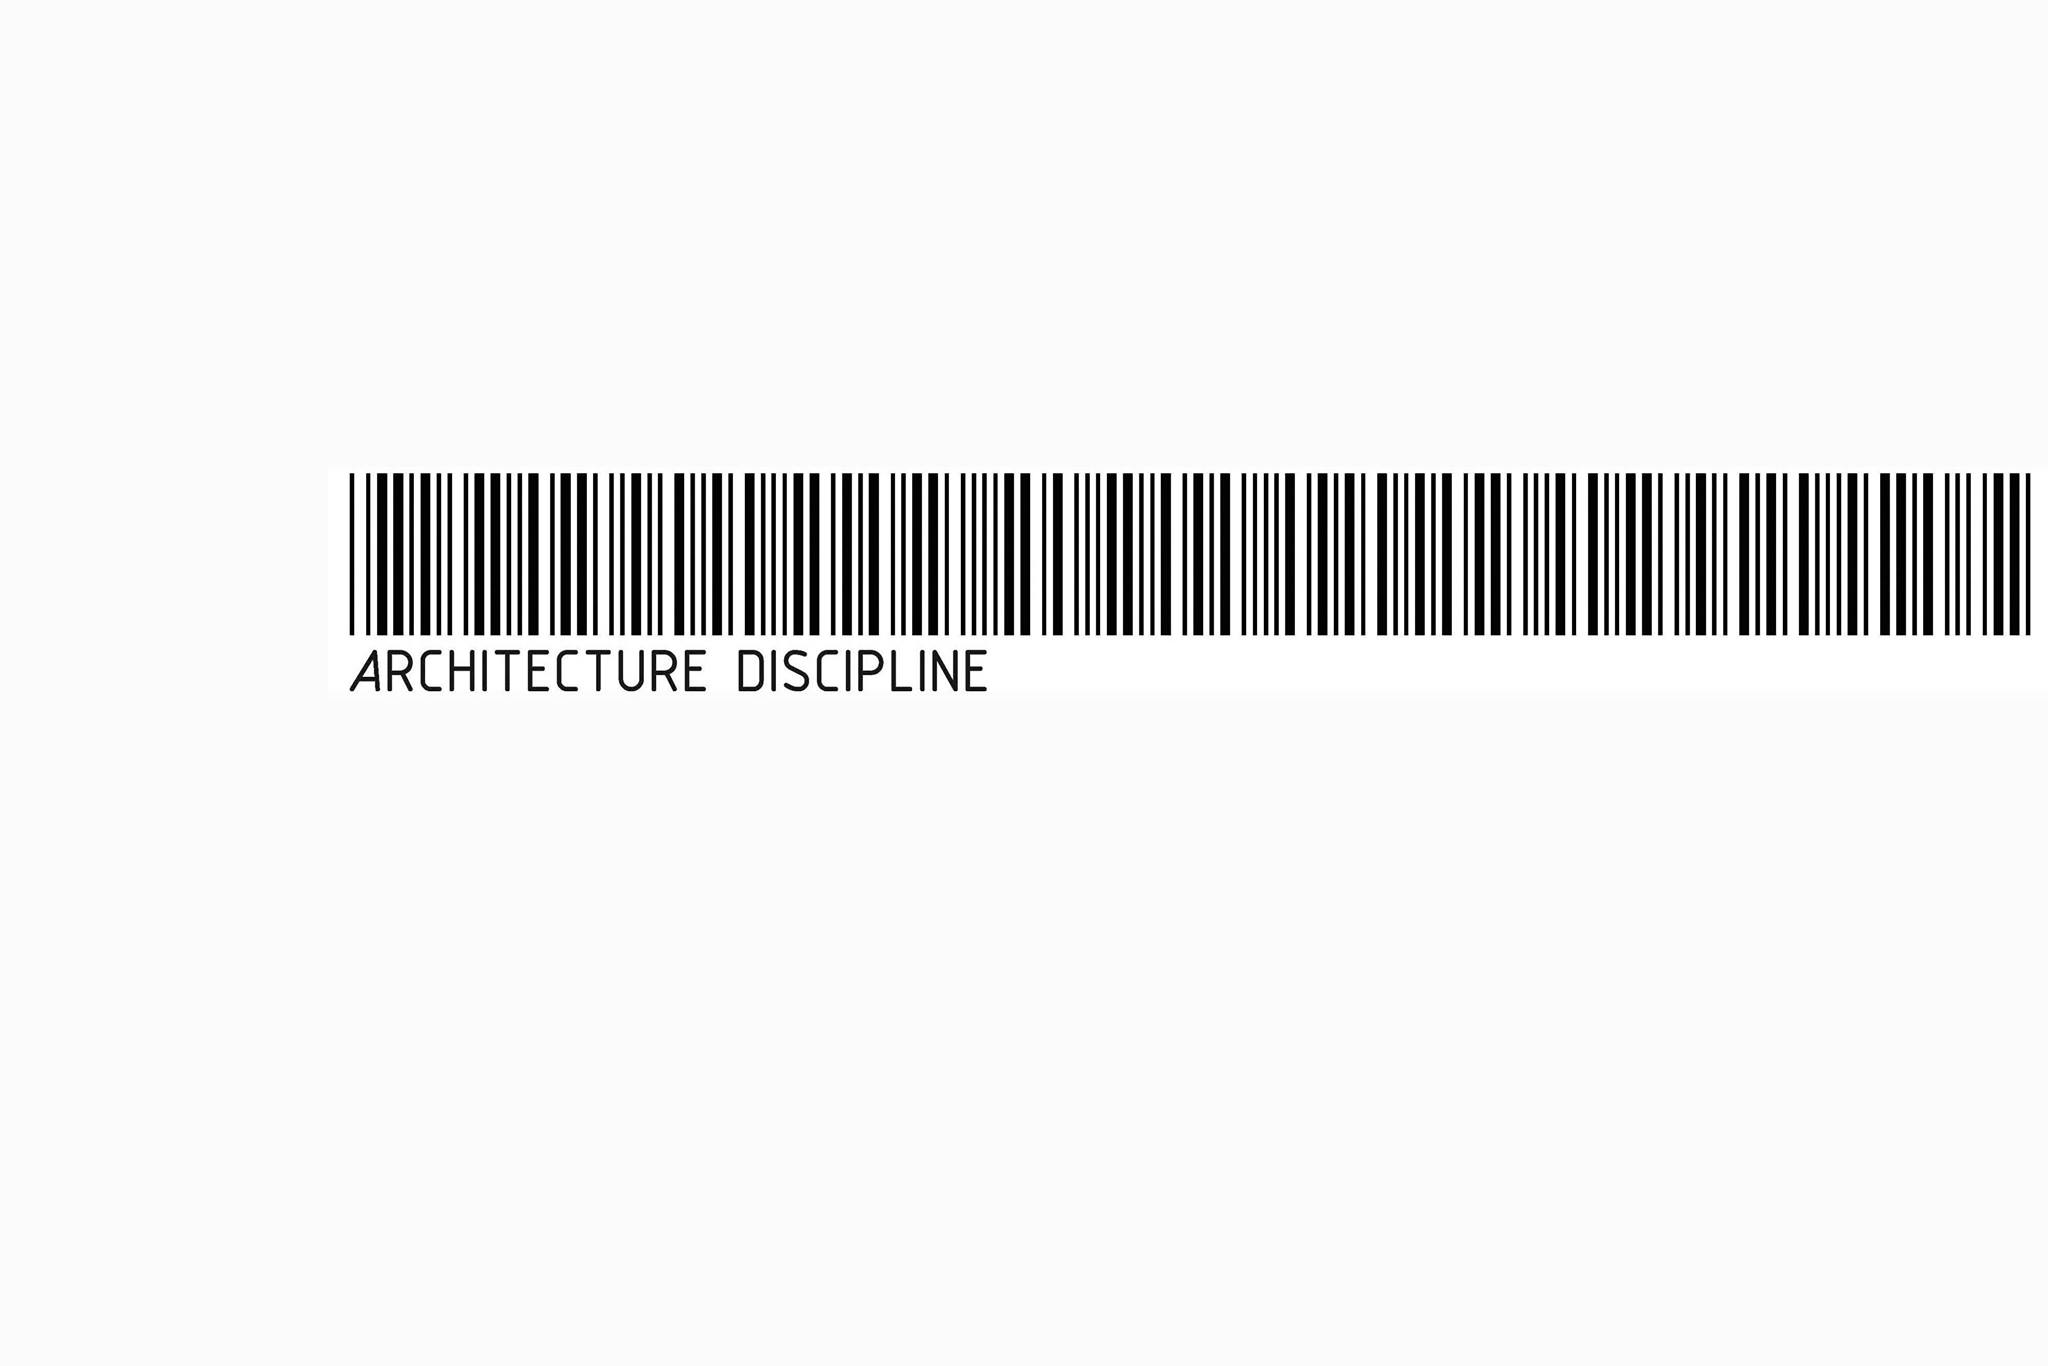 Architecture Discipline|IT Services|Professional Services